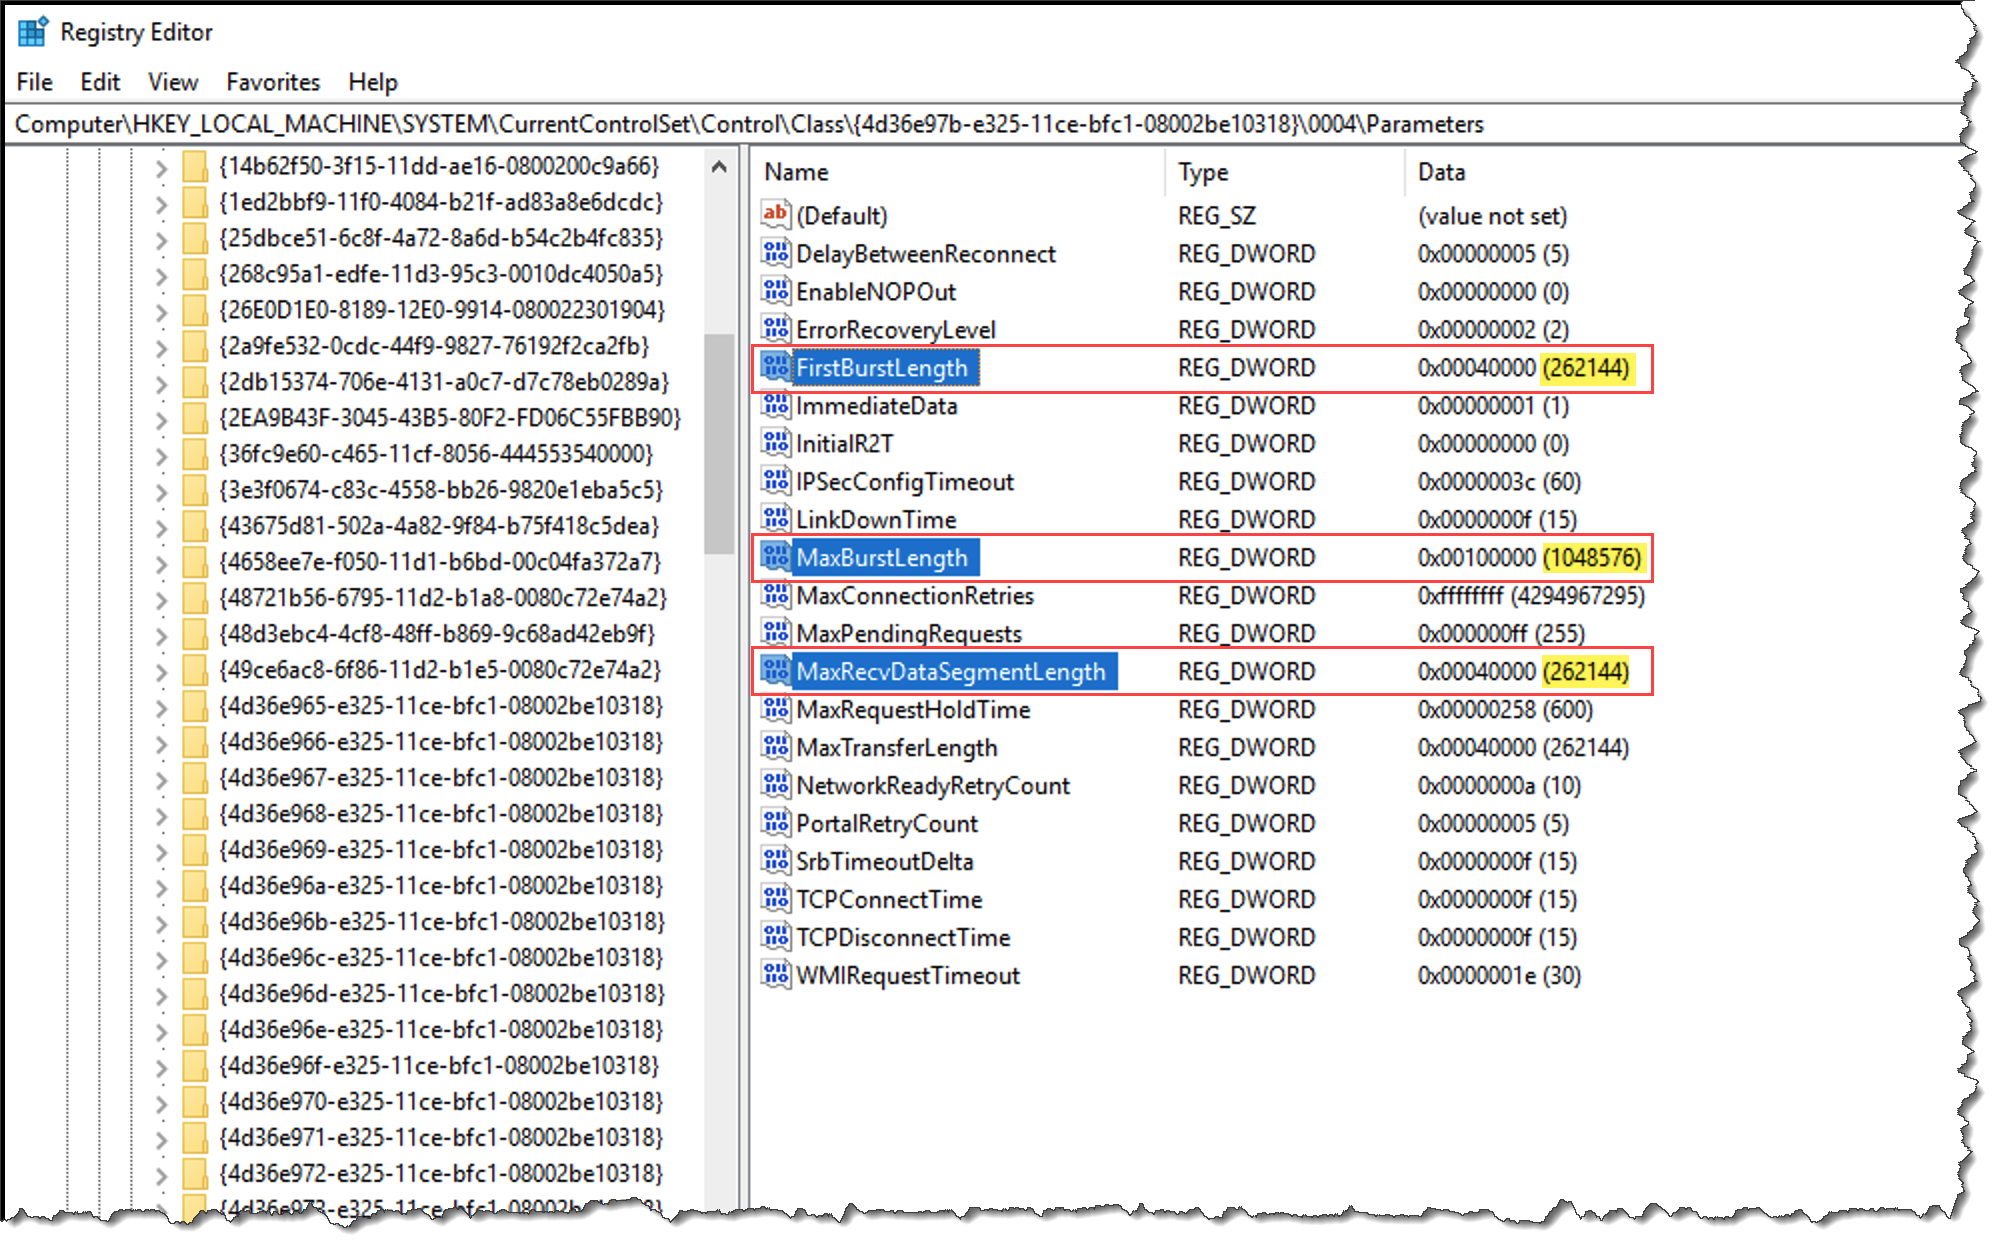 éditeur de registre Windows avec valeurs dword de longueur de paquet iSCSI mises en évidence.